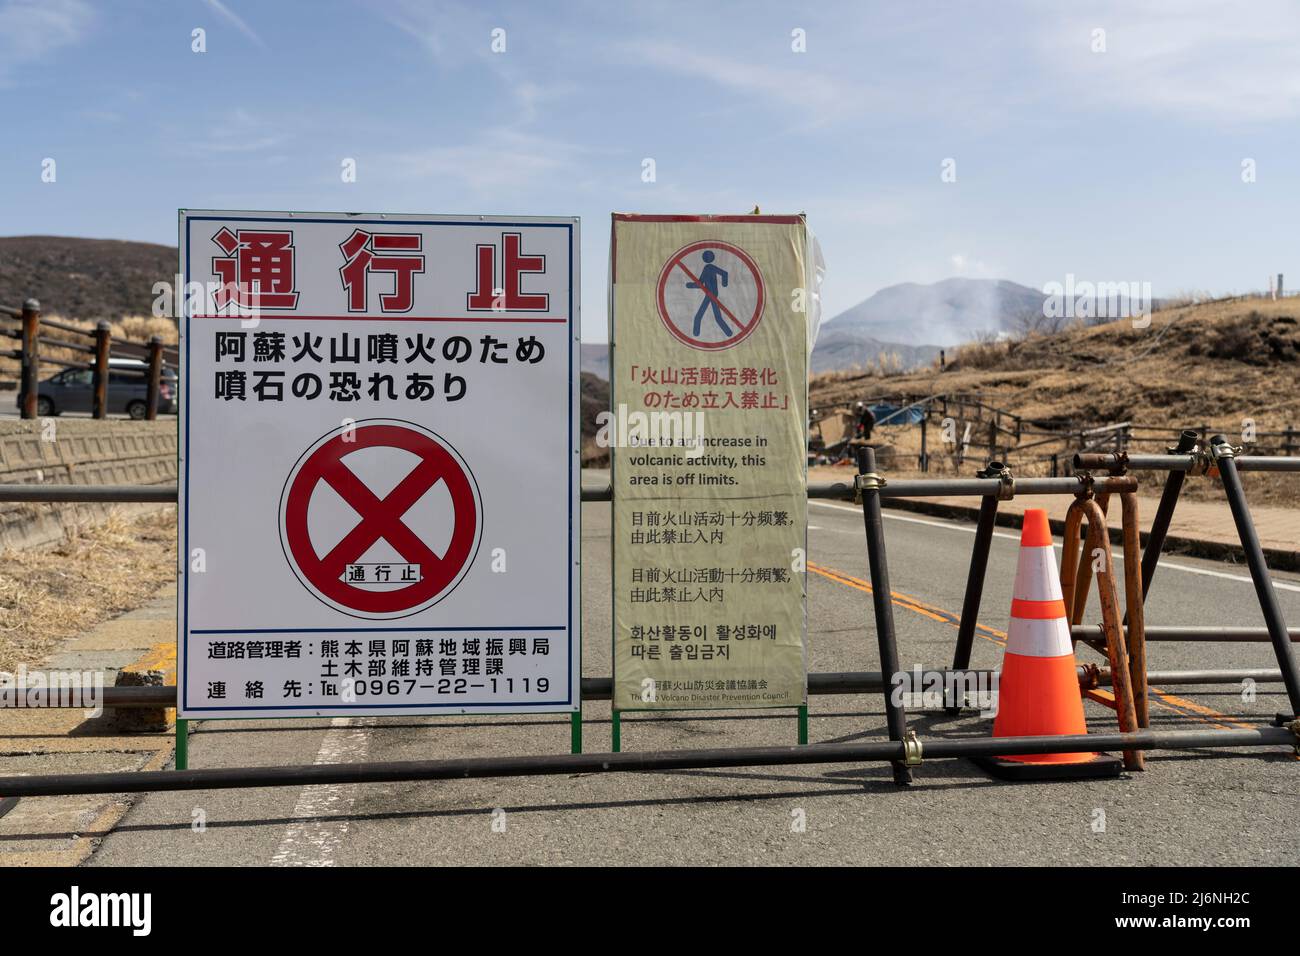 Fermeture de la route et fermeture de la zone en raison du niveau d'activité volcanique. Mt, Aso, Aso City, Kumamoto, Kyushu, Japon Banque D'Images